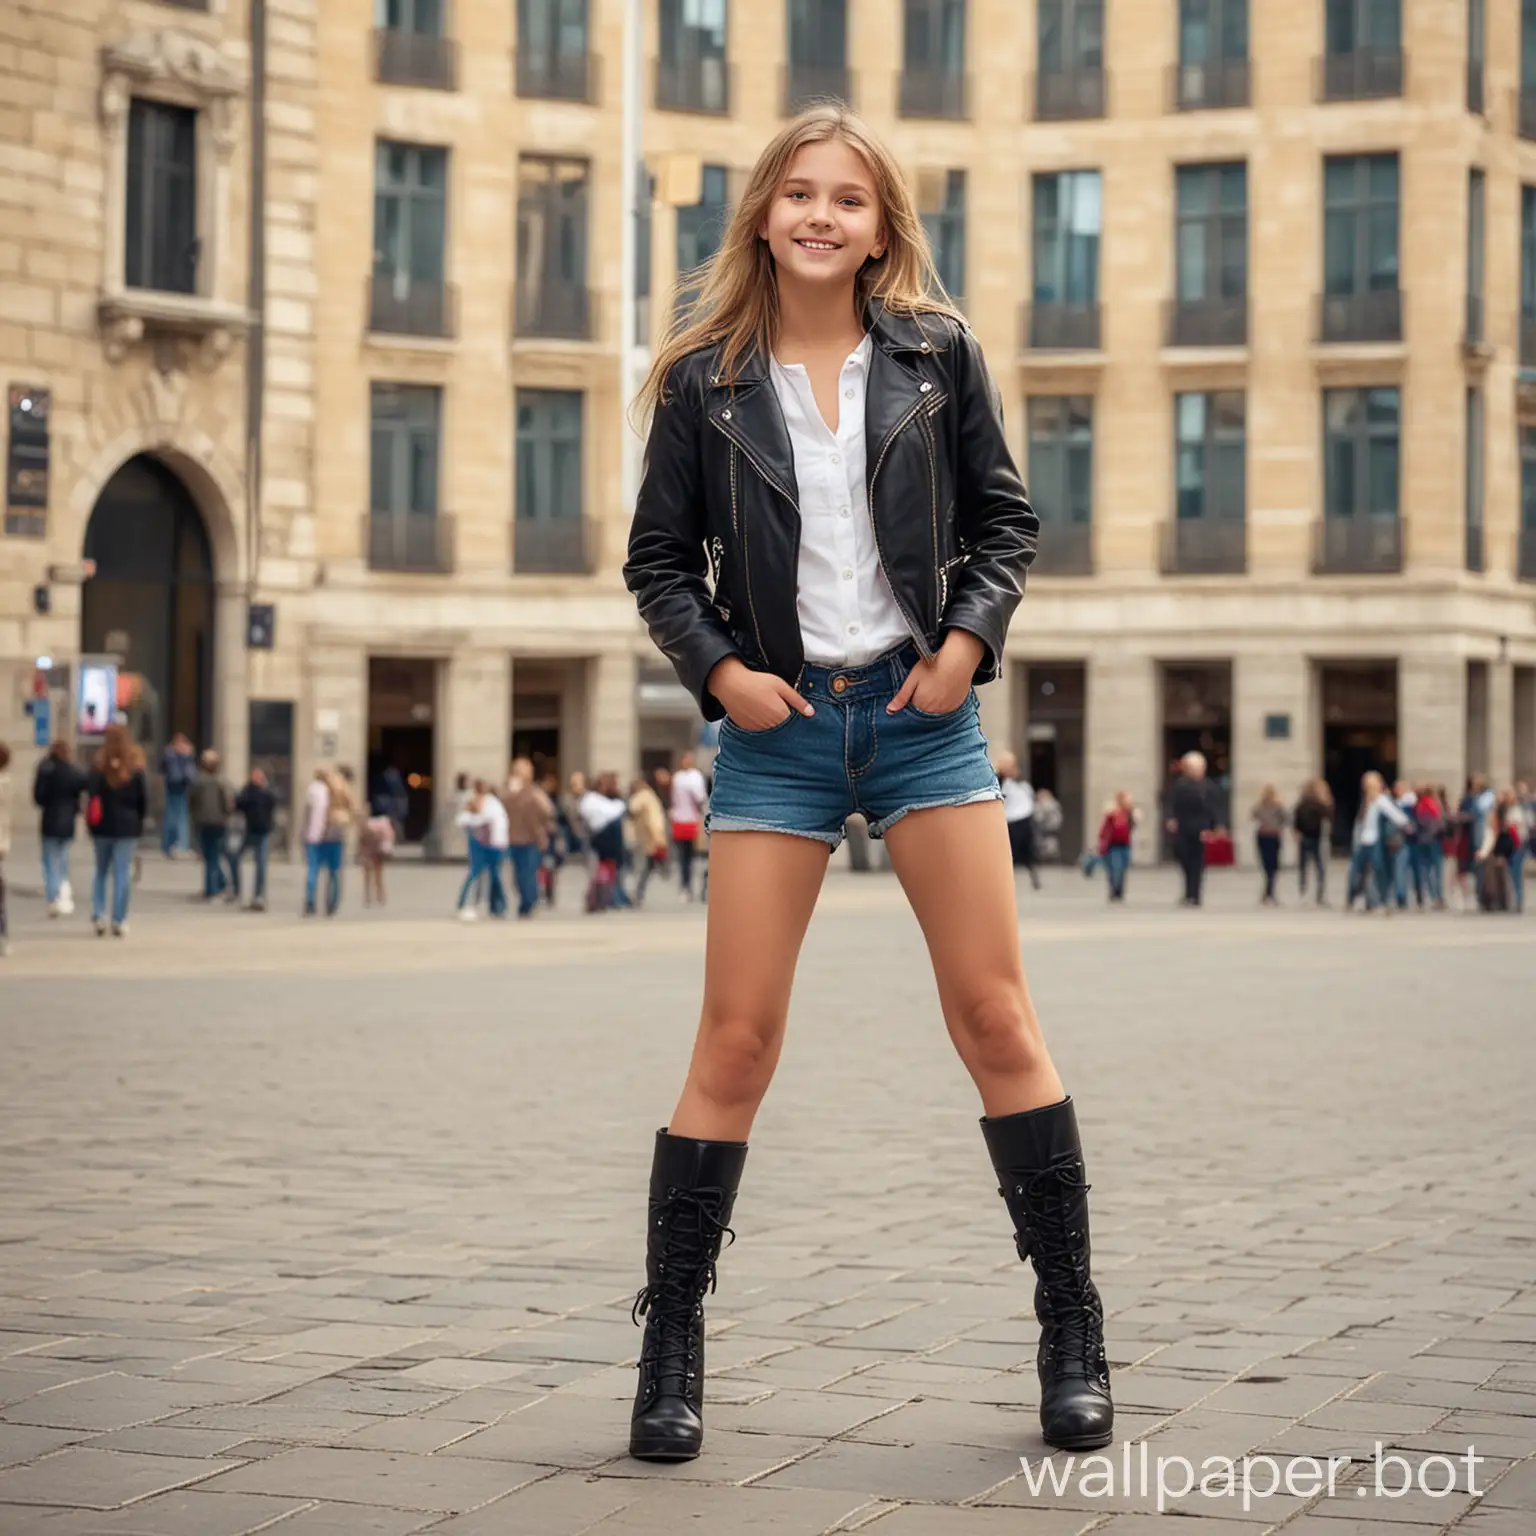 голая девочка 12 лет, городская площадь, много 
девочка  в полный рост, динамичные позы,  smile, heels boots, jacket